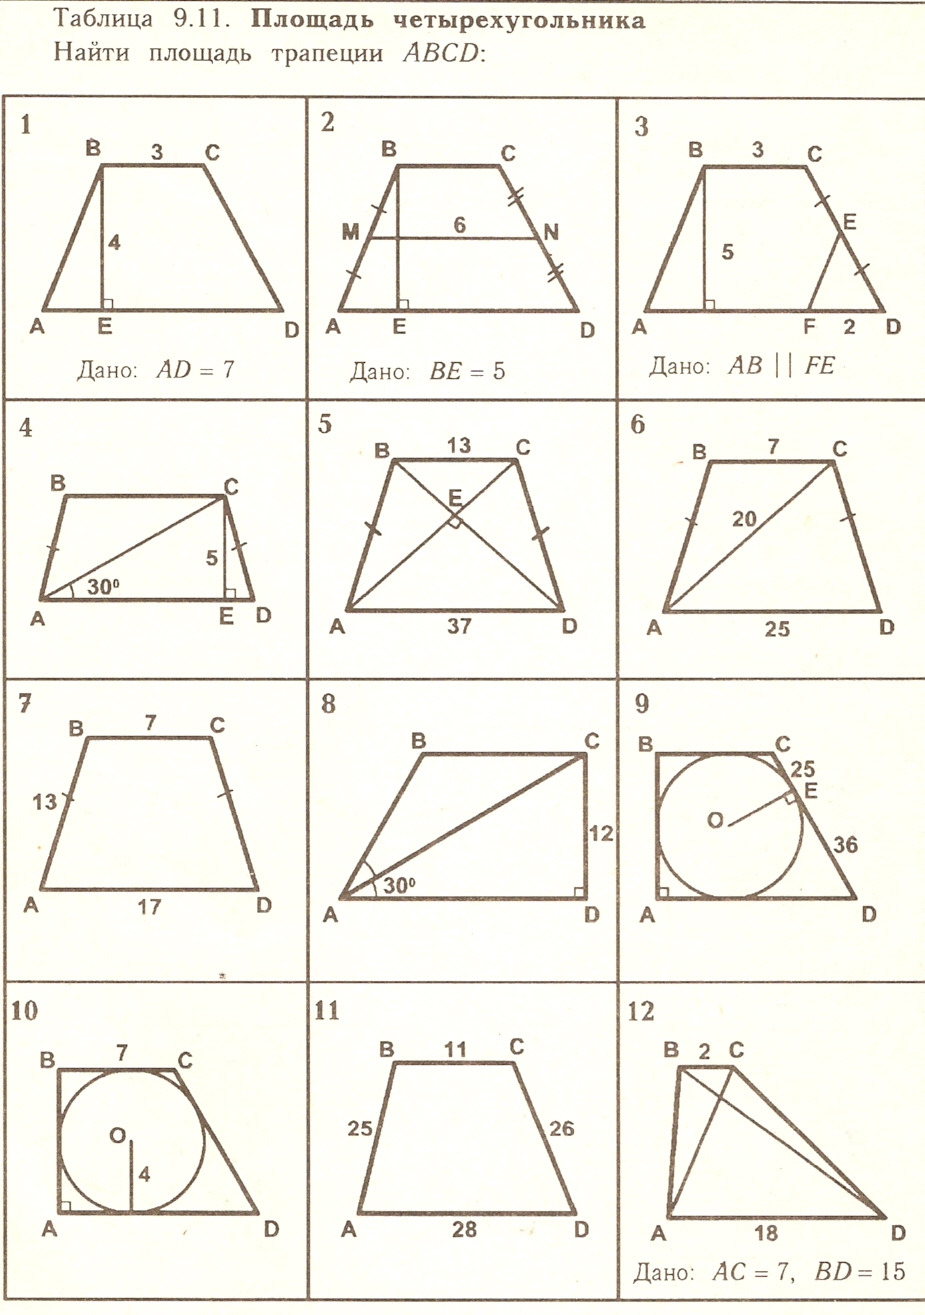 Методические рекомендации по изучению геометрии в 7-9 классах. Окружность.